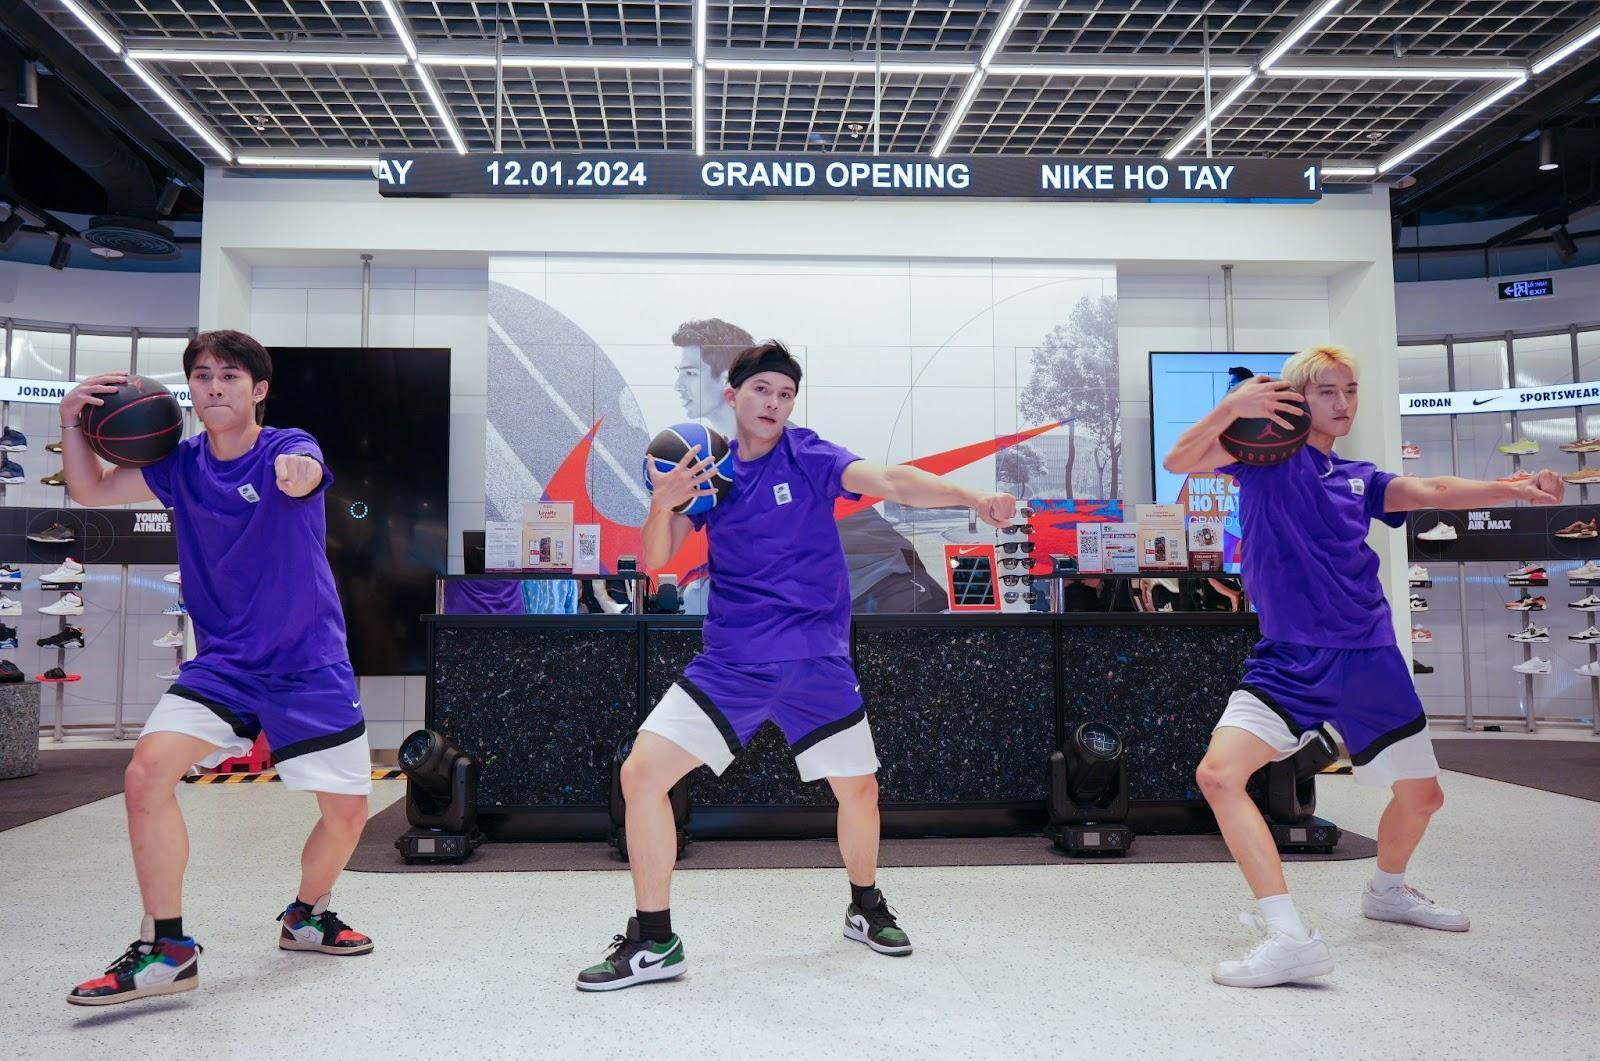 Nike ra mắt cửa hàng hiện đại tại Hà Nội với chuỗi hoạt động hấp dẫn- Ảnh 2.